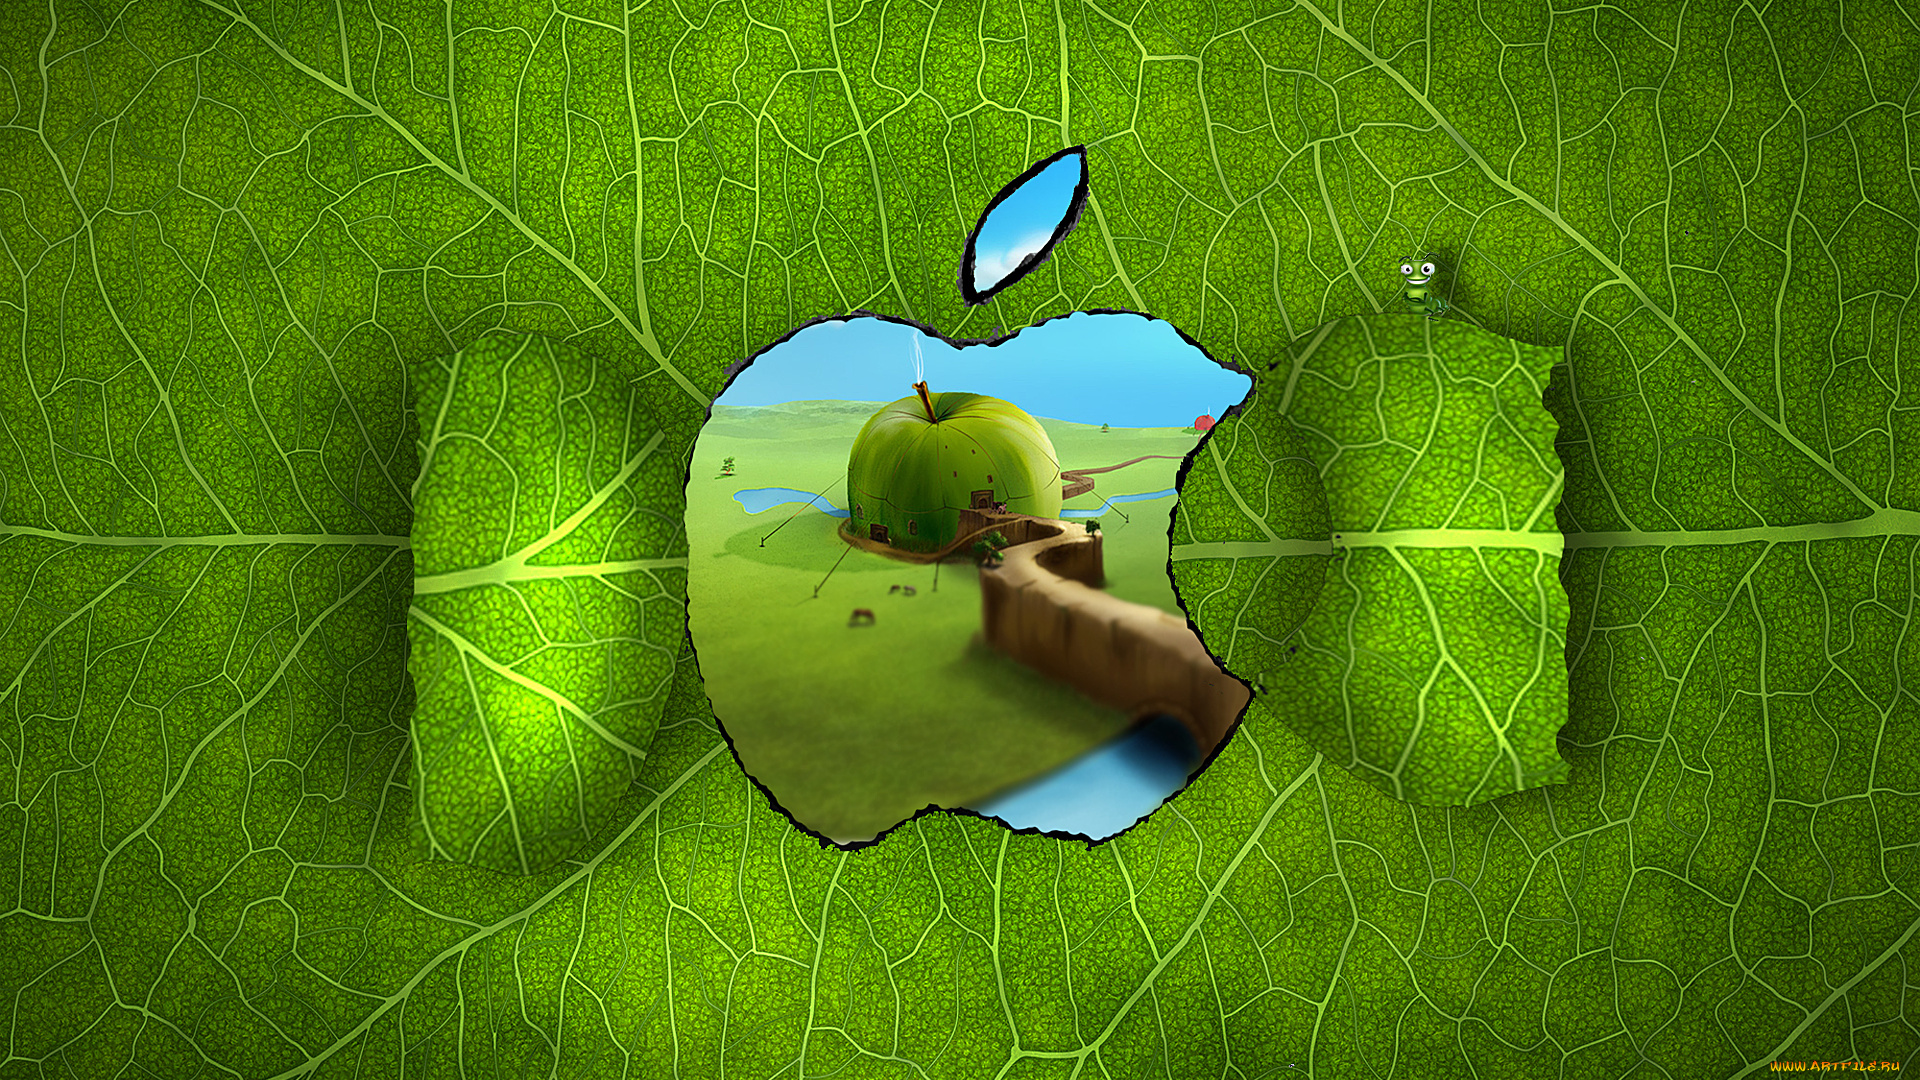 компьютеры, apple, дом, гусеница, яблоко, зелень, канаты, прожилки, окно, лист